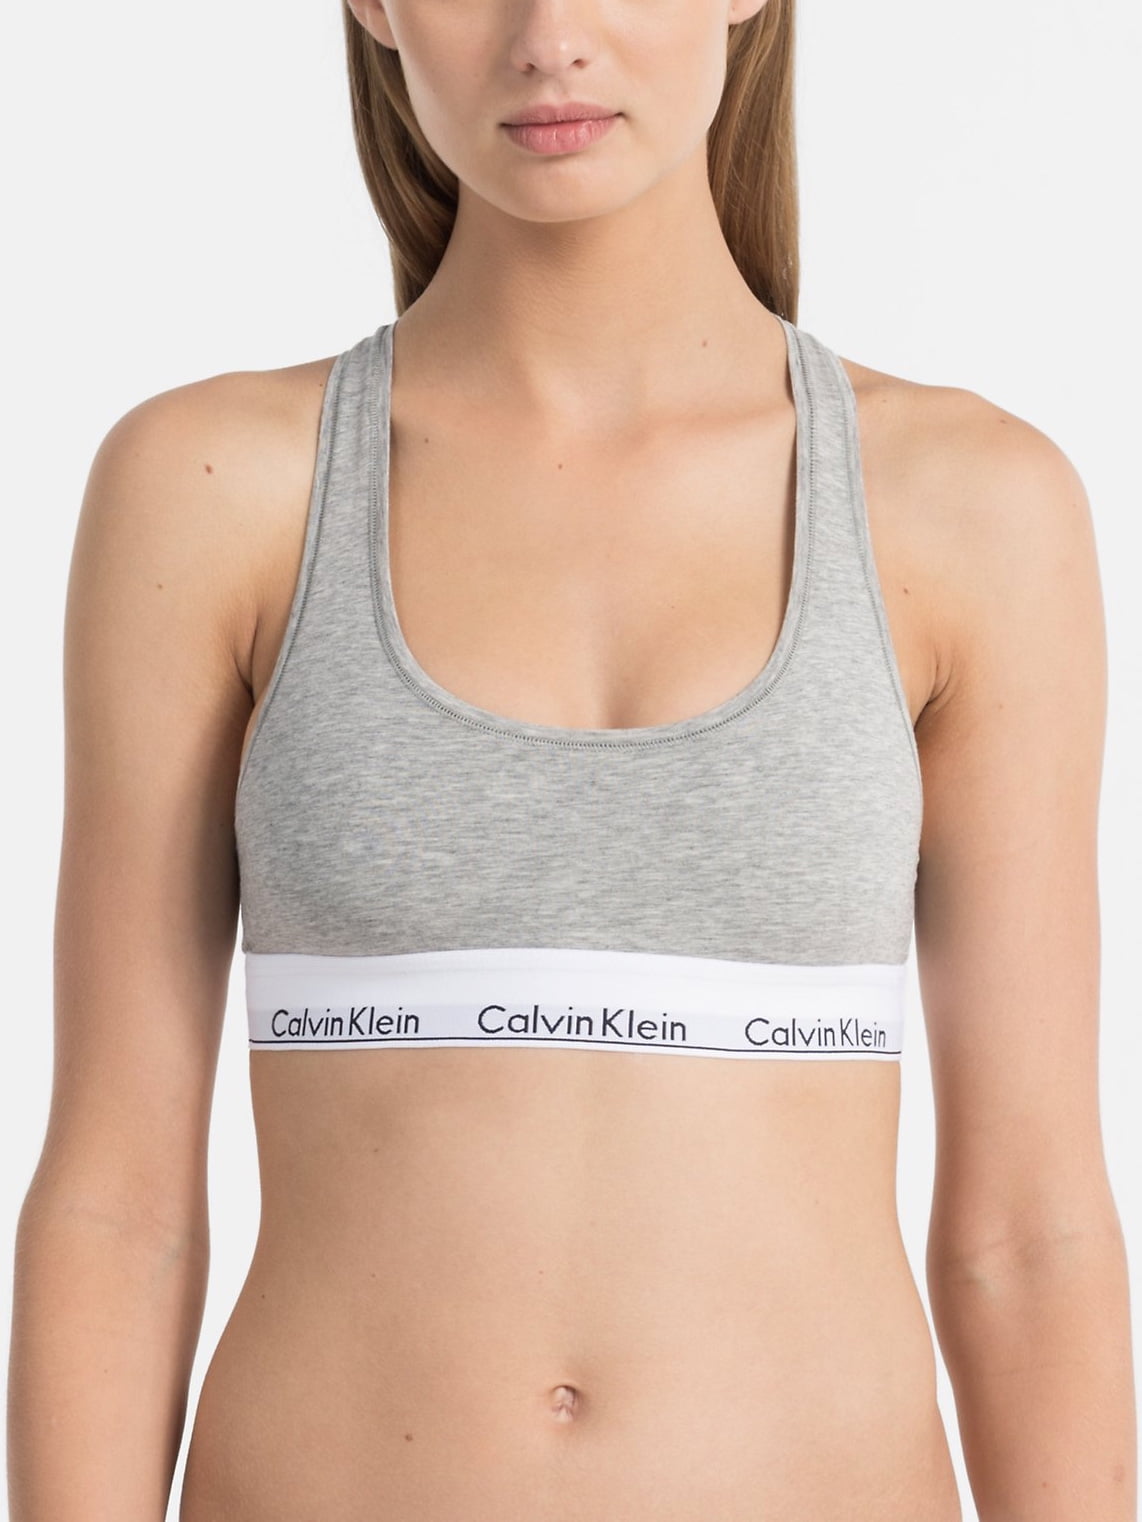 Calvin Klein Women's Modern Cotton Bralette, Grey Heather, Medium -  